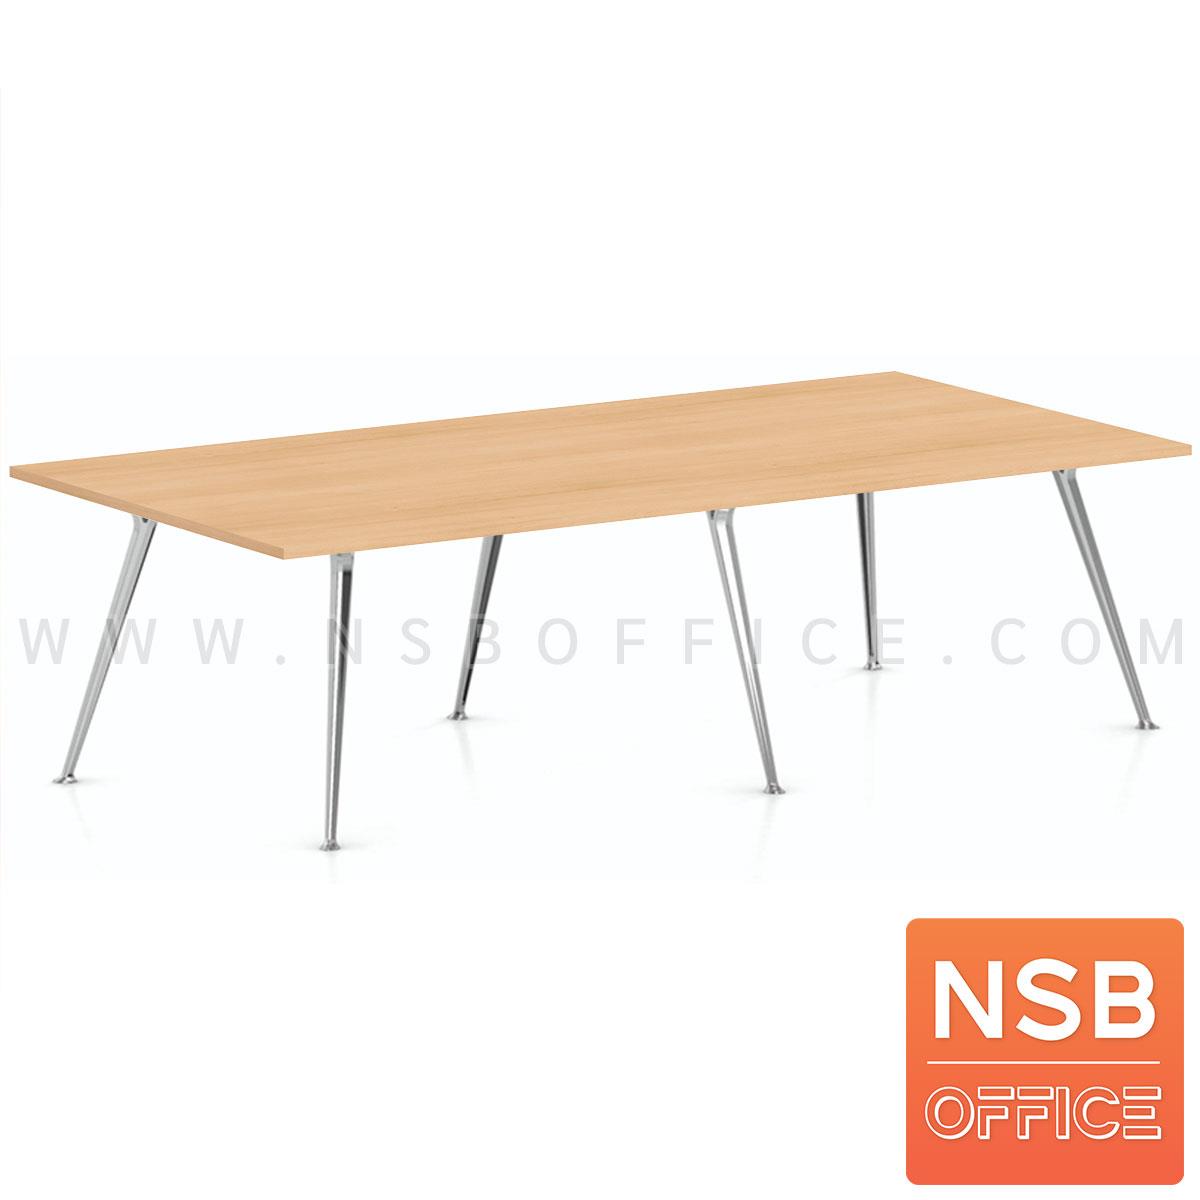 A05A231:โต๊ะประชุมทรงสี่เหลี่ยม  รุ่น Bronze (บรอนซ์) ขนาด 240W*120D cm. ขาอลูมิเนียม